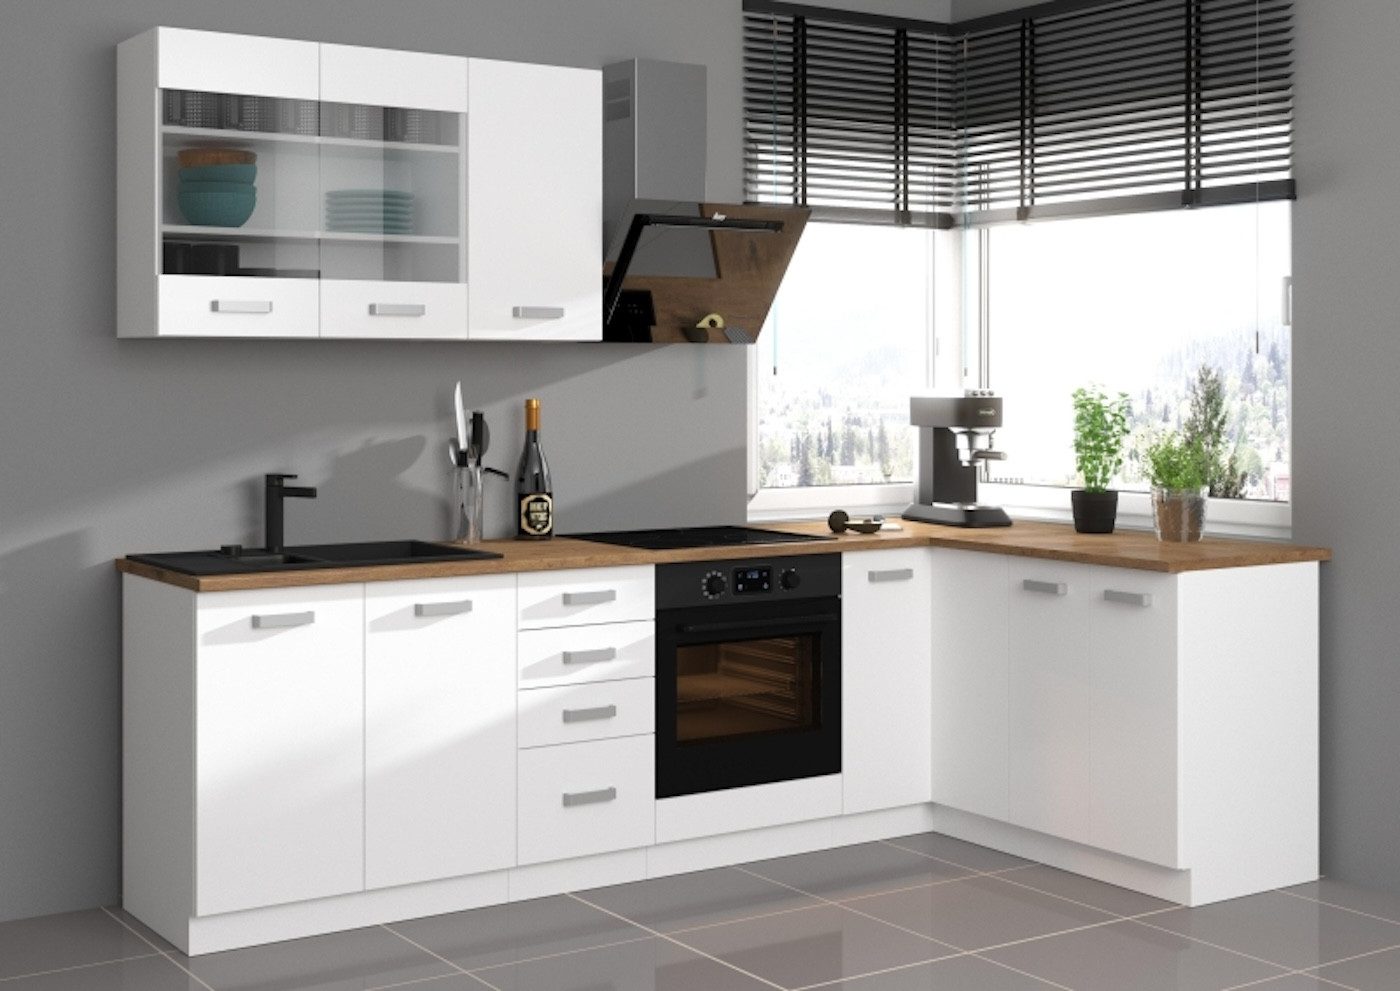 ROYAL24_MARKT Winkelküche - Hochwertige Winkel für Ihre Küche, Beste Güte - Innovativ - Modern